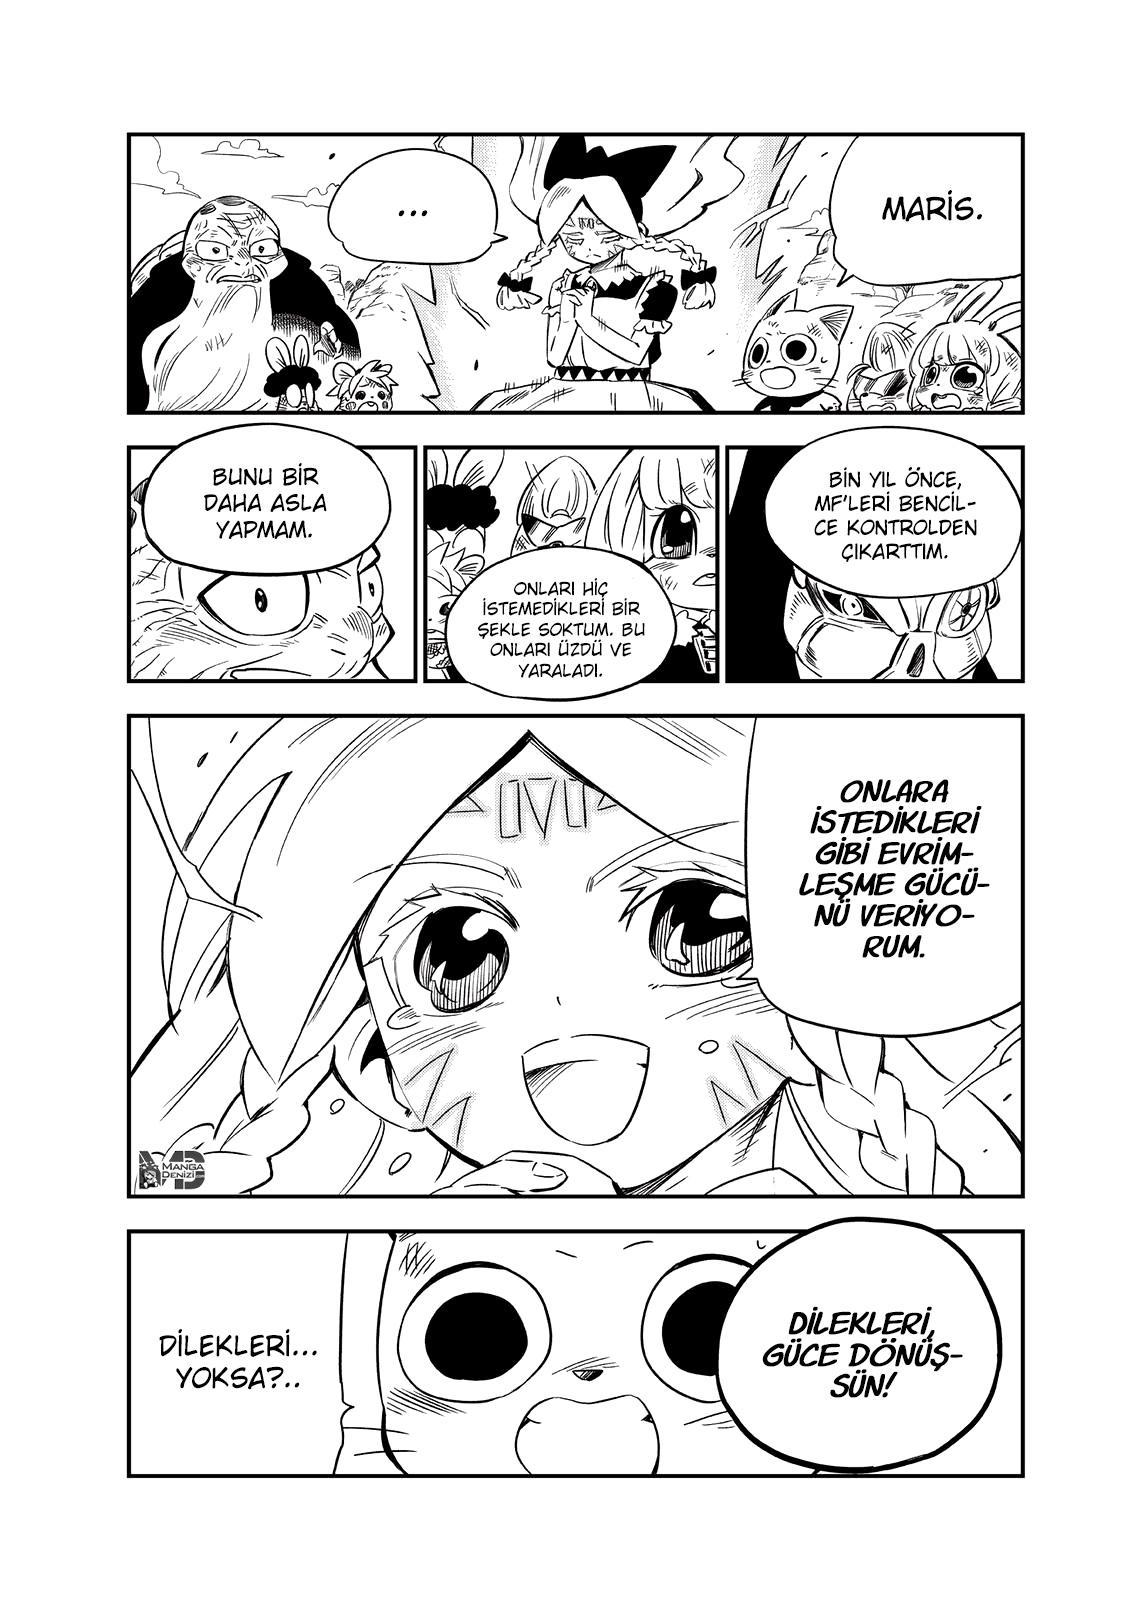 Fairy Tail: Happy's Great Adventure mangasının 73 bölümünün 4. sayfasını okuyorsunuz.